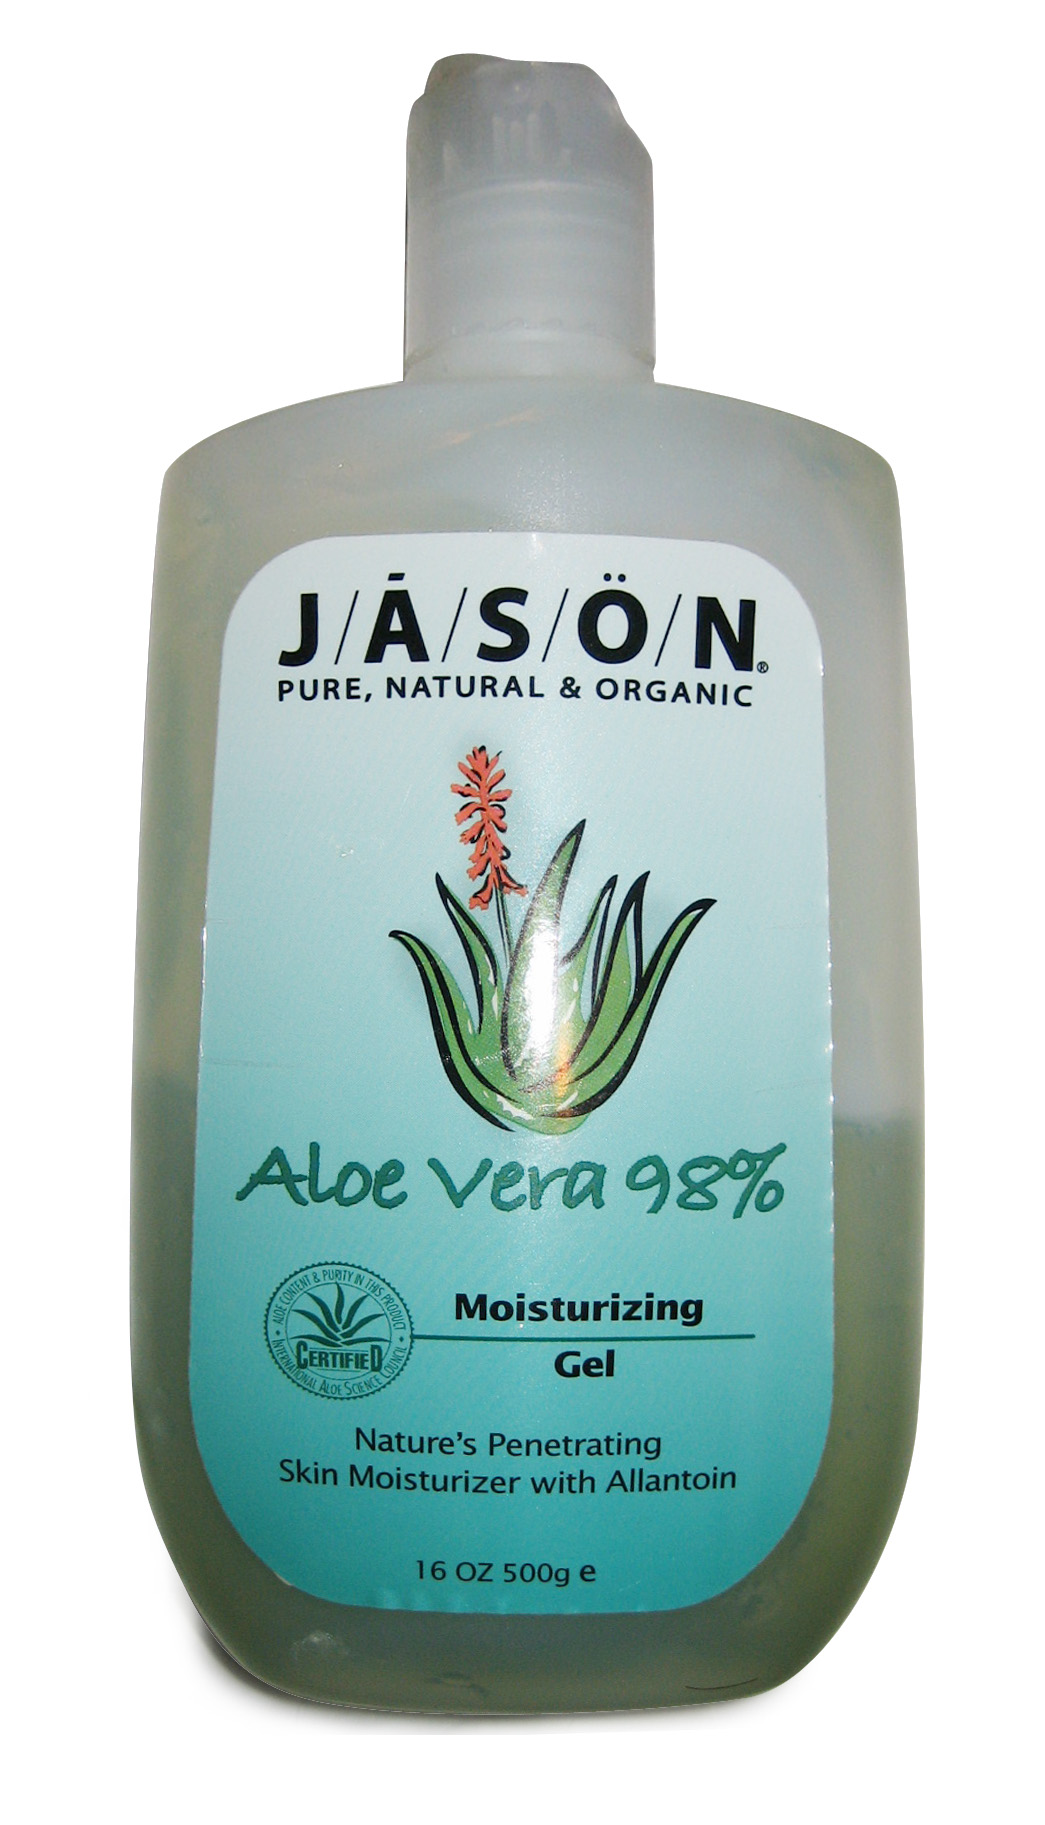 Aloe vera skin moisturizer.